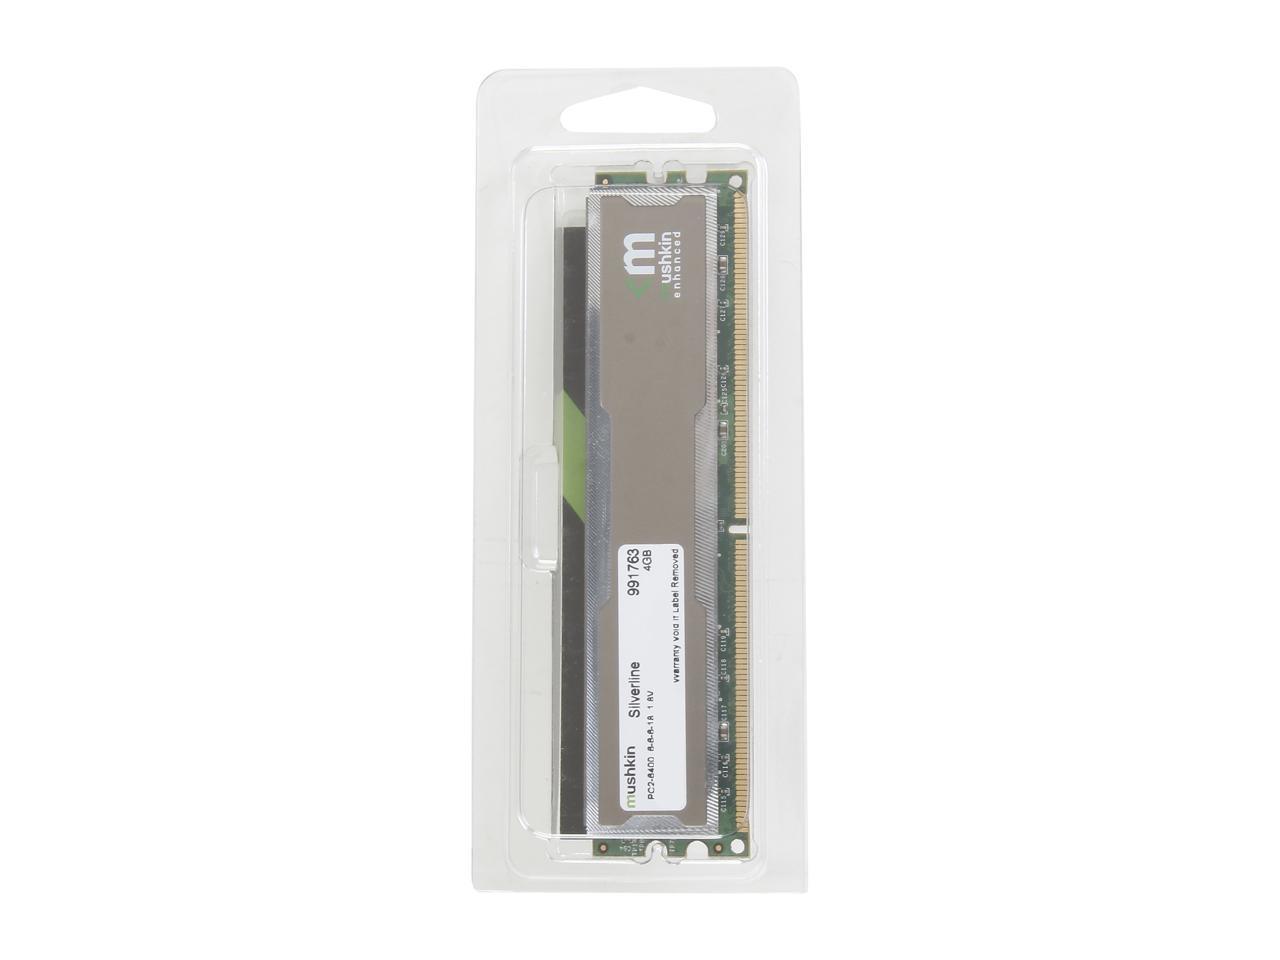 Mushkin Enhanced Silverline 4GB DDR2 800 (PC2 6400) Desktop Memory Model 991763